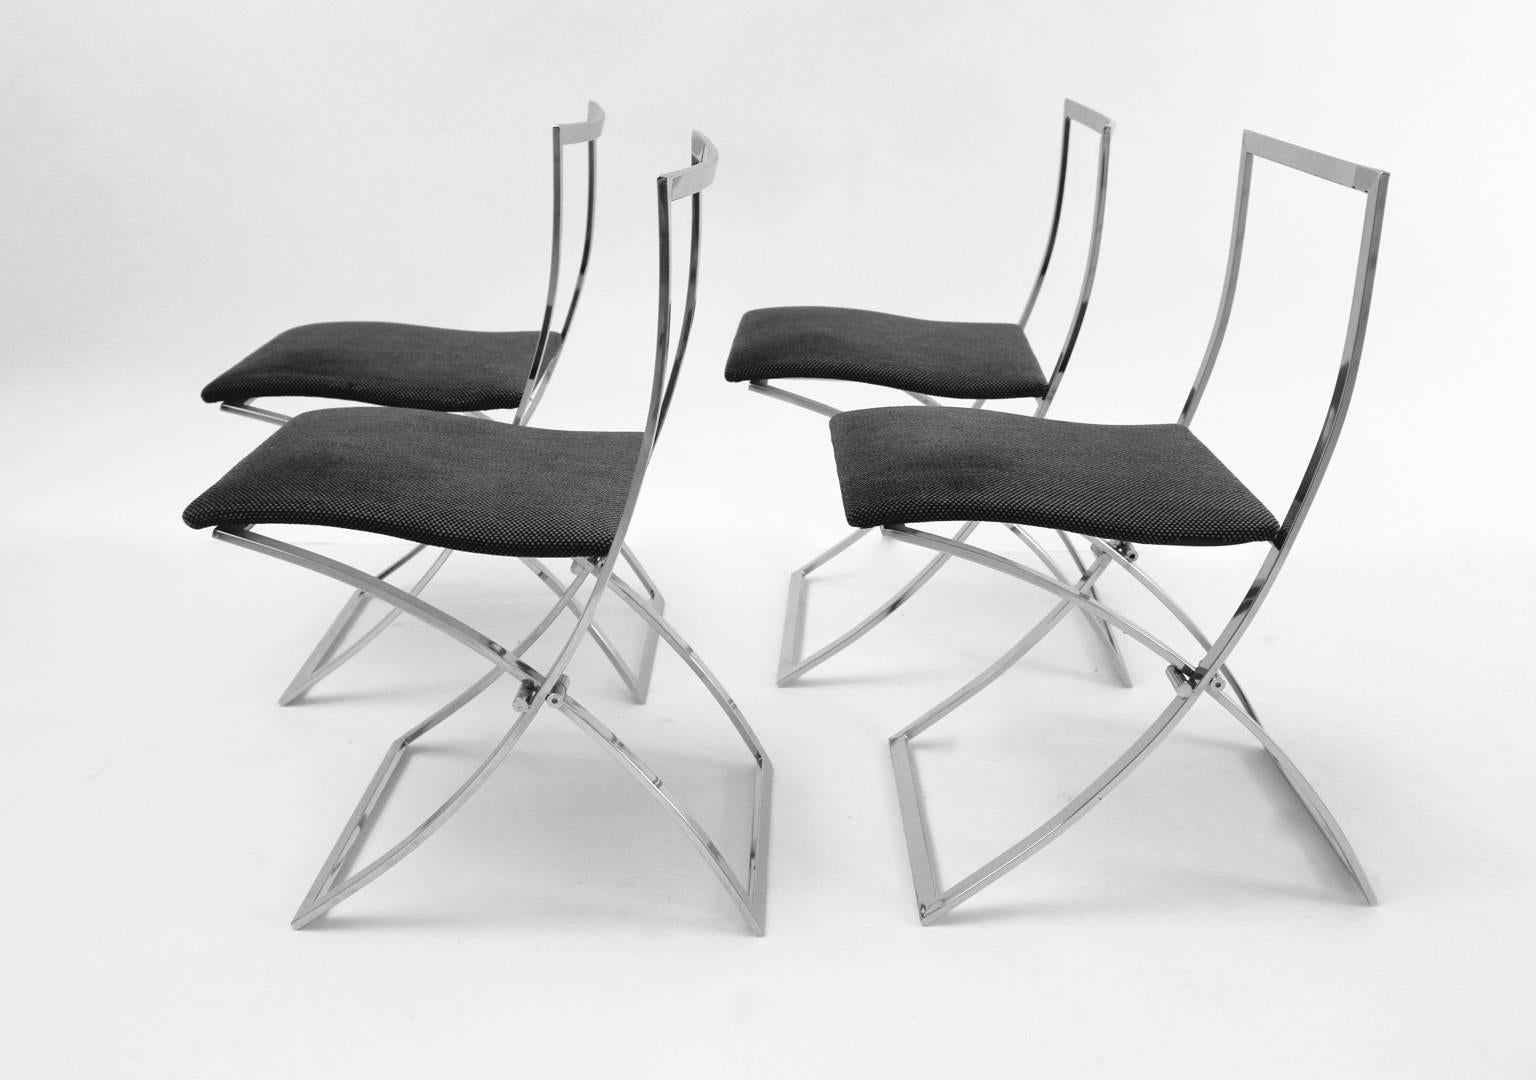 Ensemble de 4 chaises vintage moderne du milieu du siècle dernier, conçu par Marcello Cuneo dans les années 1970 en Italie et produit par Mobel.
Le cadre des chaises pliantes est chromé et le revêtement est en tissu textile de haute qualité gris